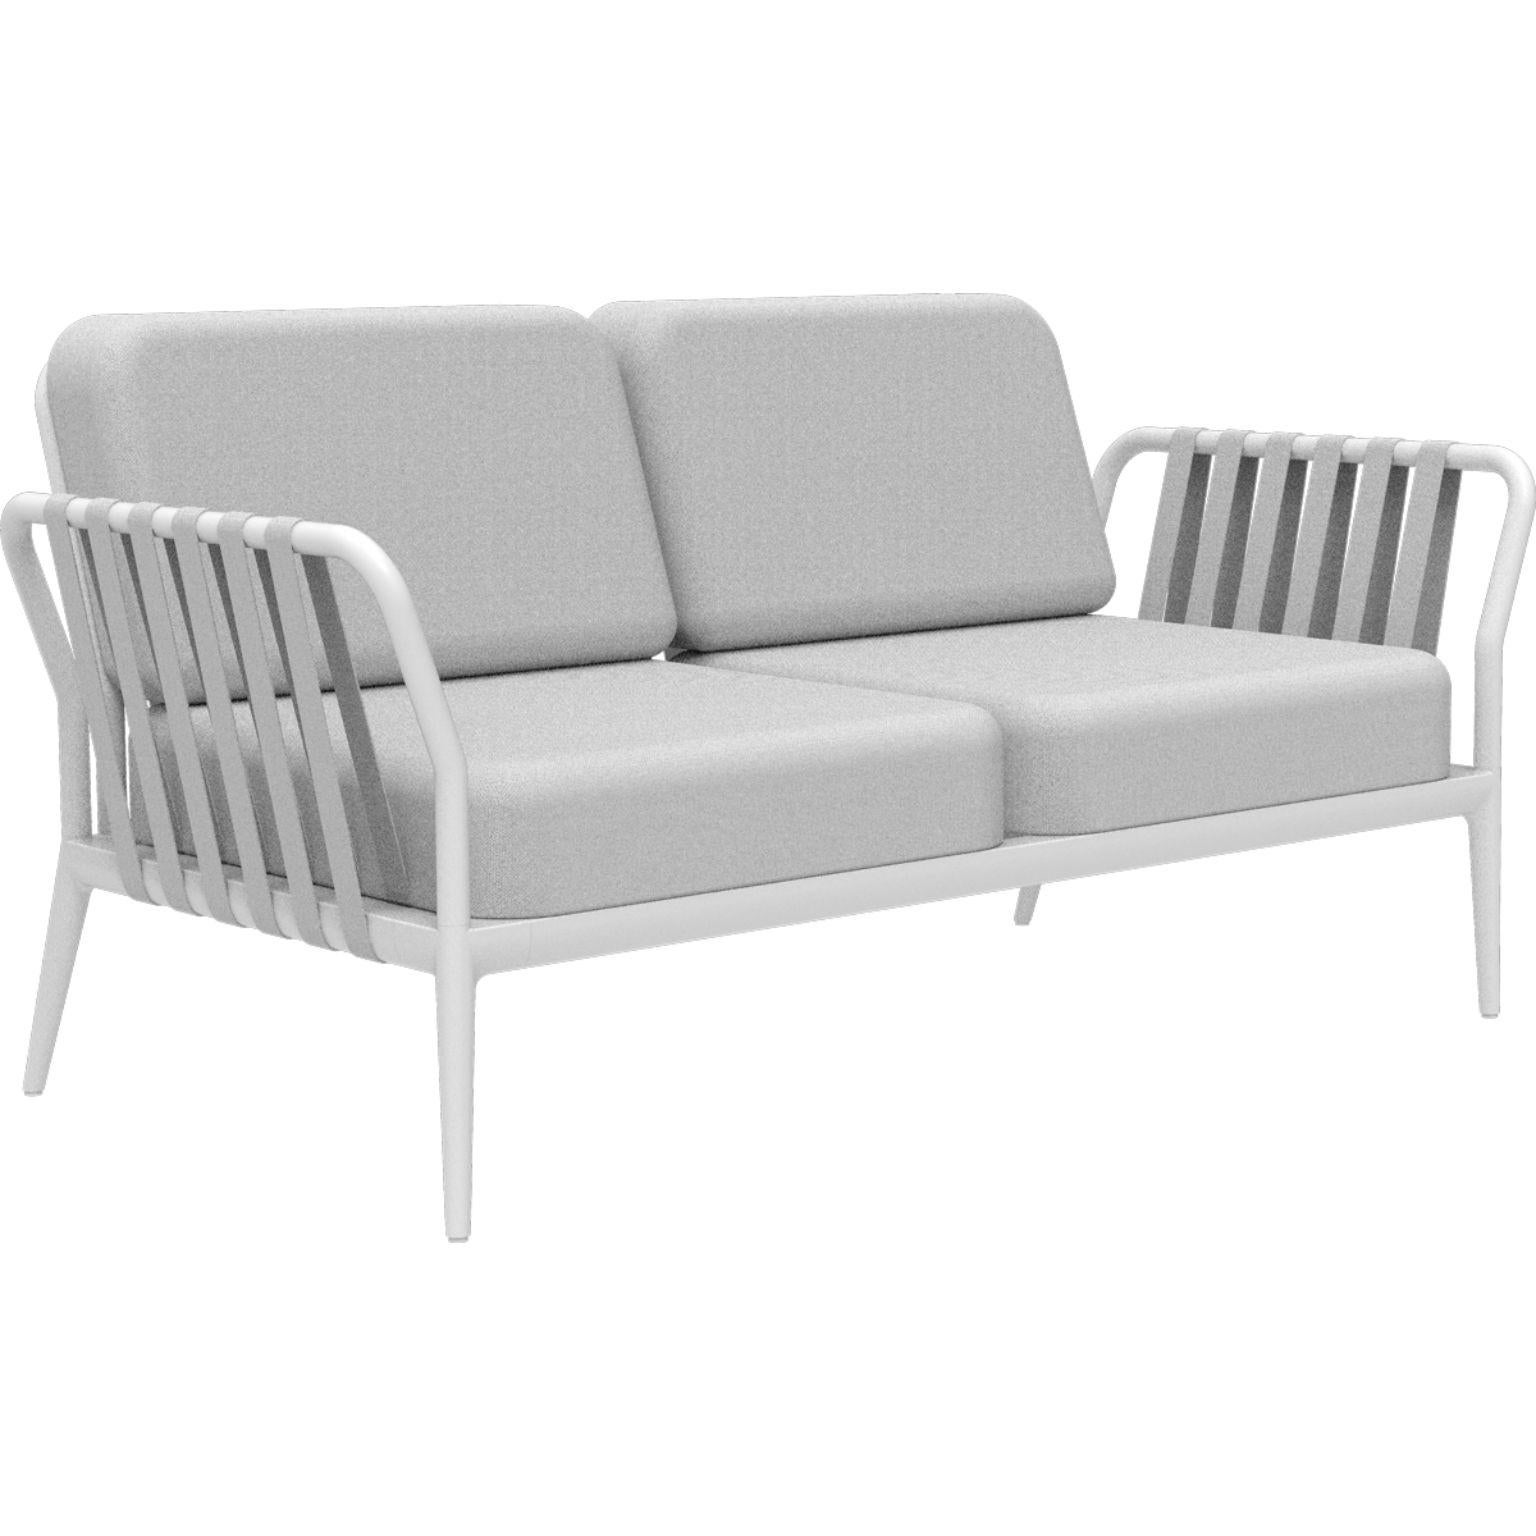 Weißes Sofa mit Bändern von MOWEE
Abmessungen: T83 x B160 x H81 cm
MATERIAL: Aluminium, Polstermöbel
Gewicht: 32 kg
Auch in verschiedenen Farben und Ausführungen erhältlich. 

Eine Collection'S, die durch ihre Schönheit und Robustheit